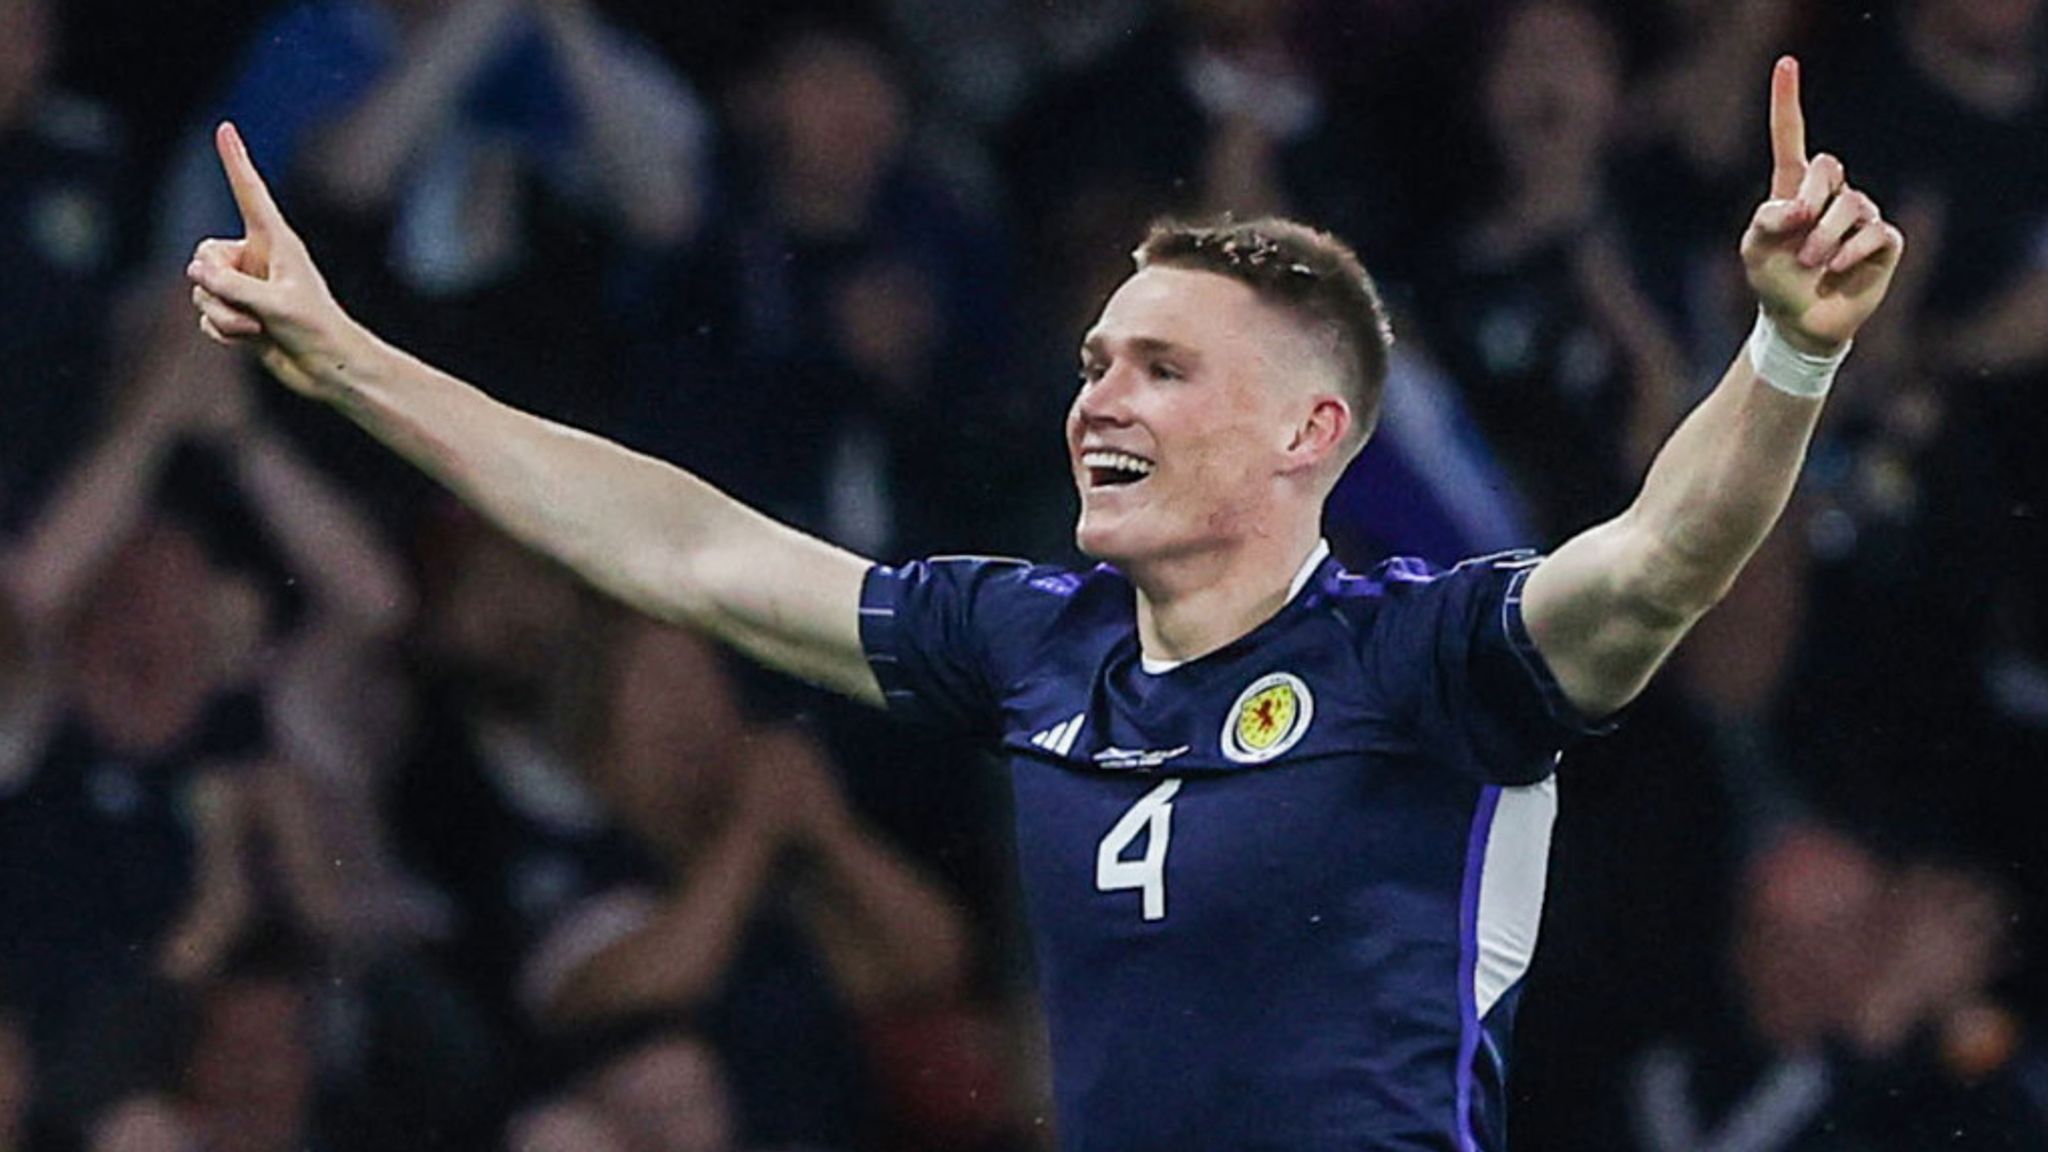 Scotland 20 Scott McTominay scores again as Scotland take big